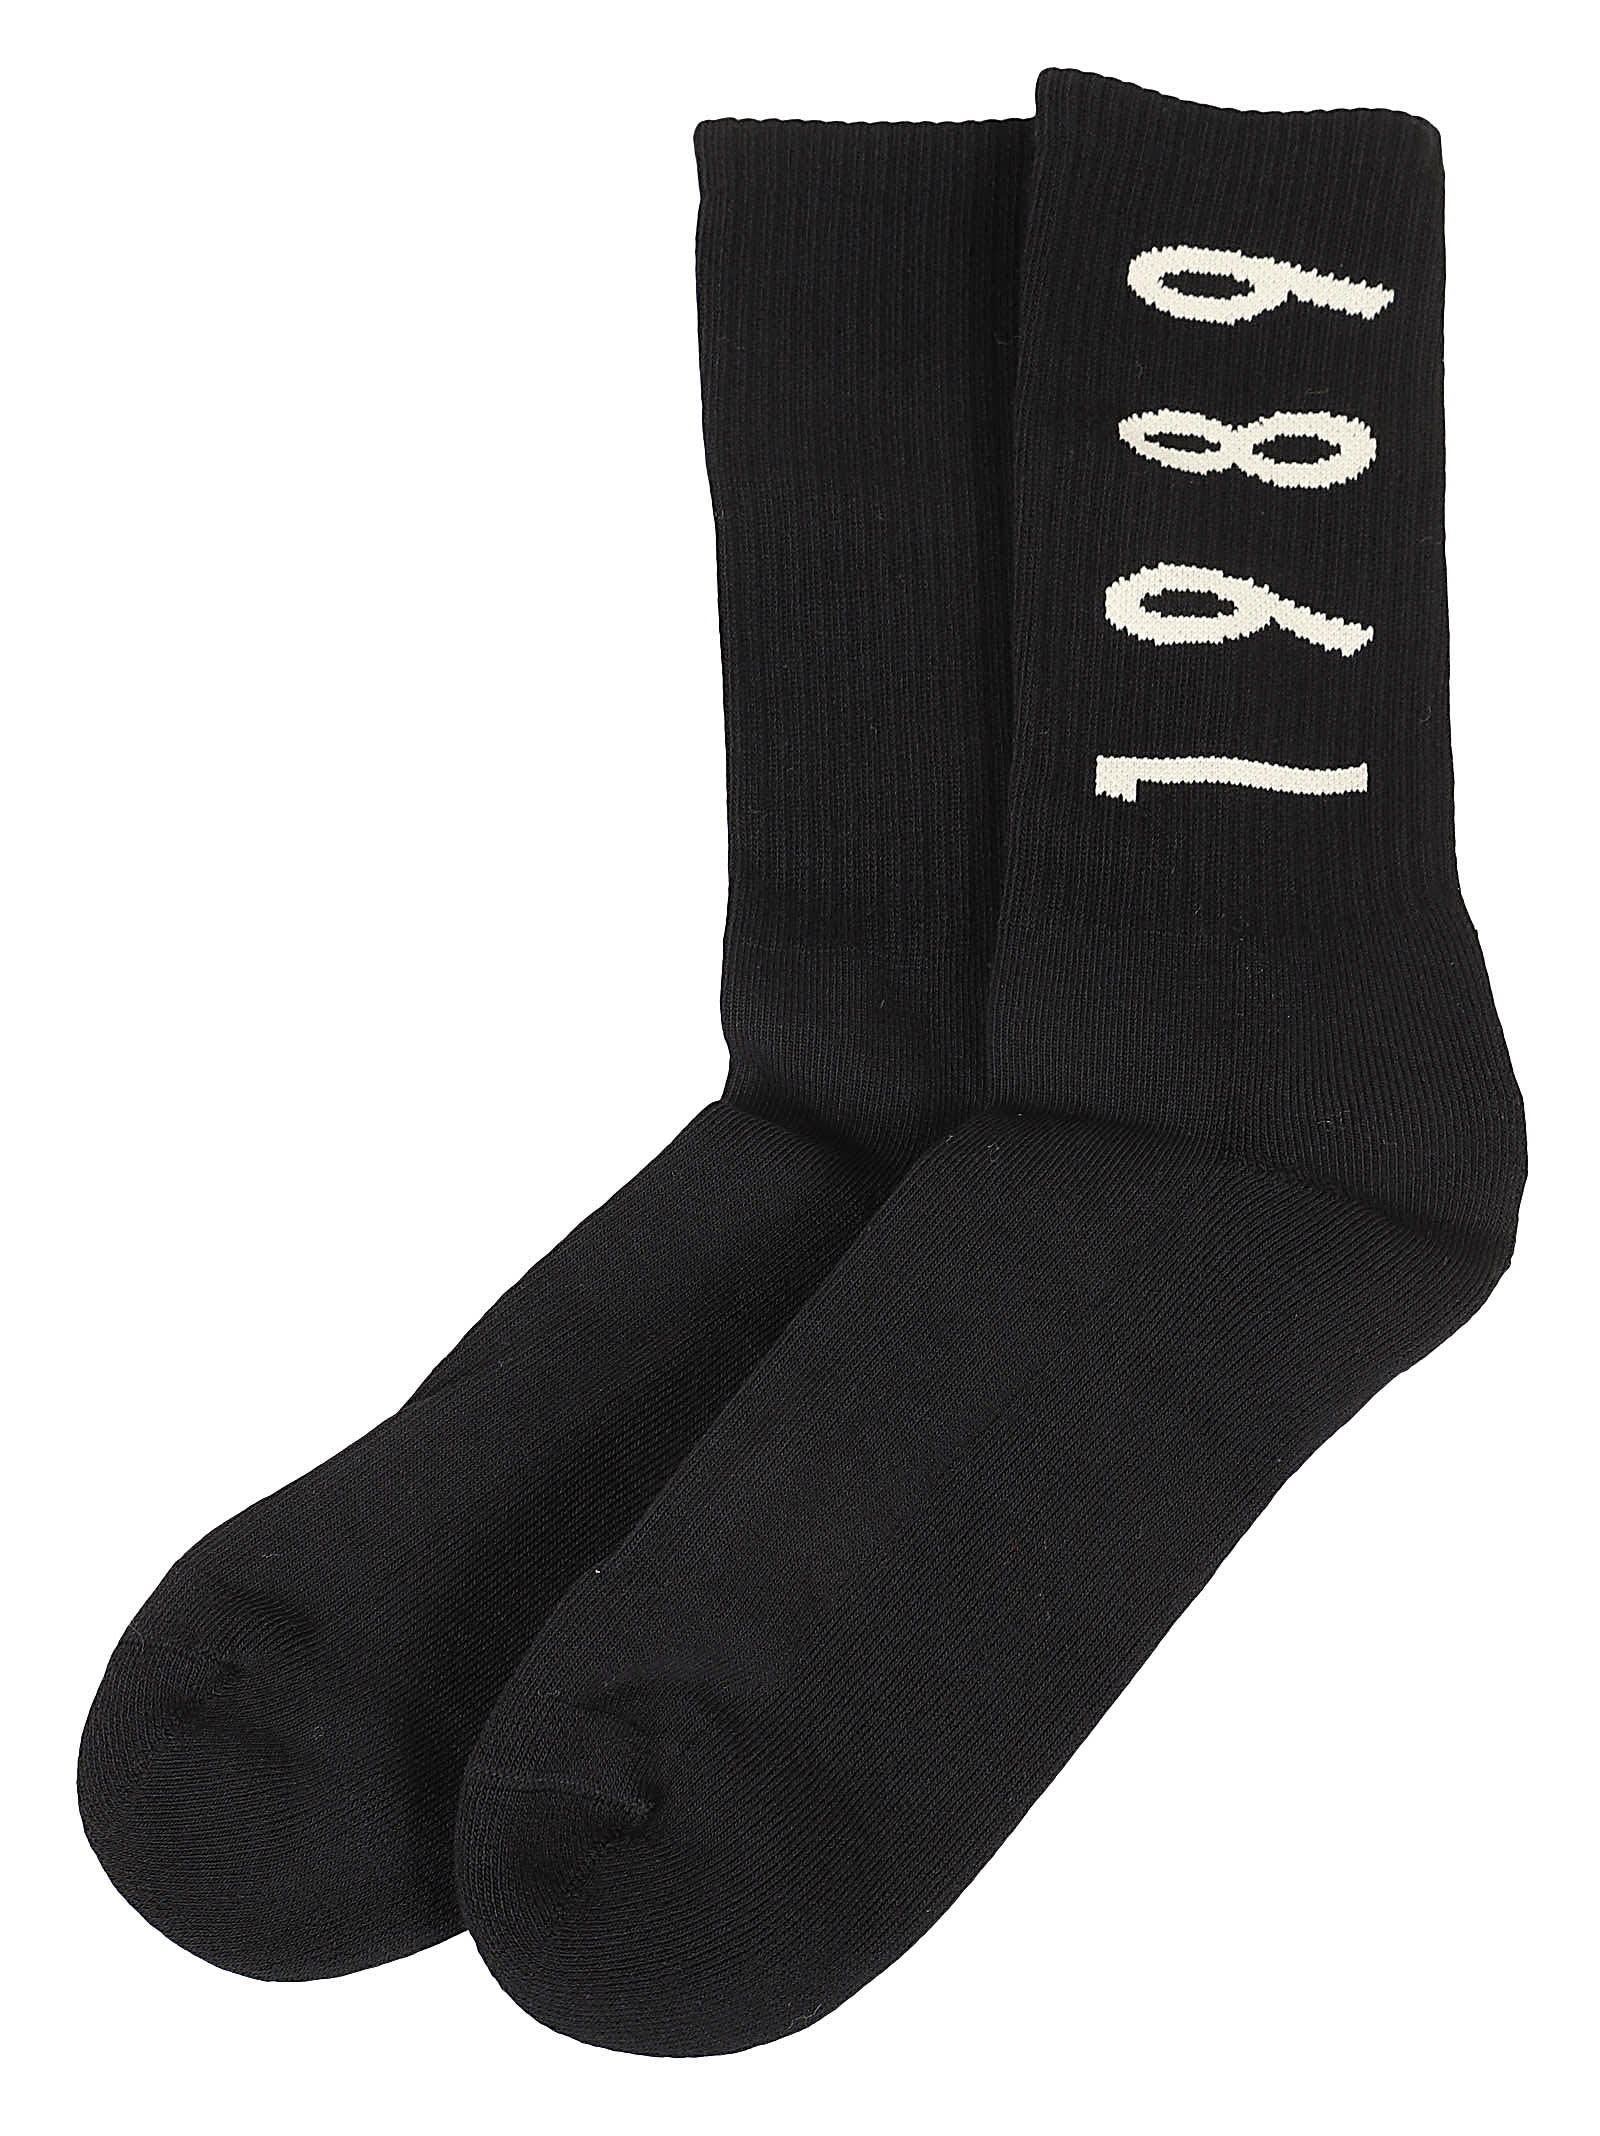 1989 Studio Socks In Black